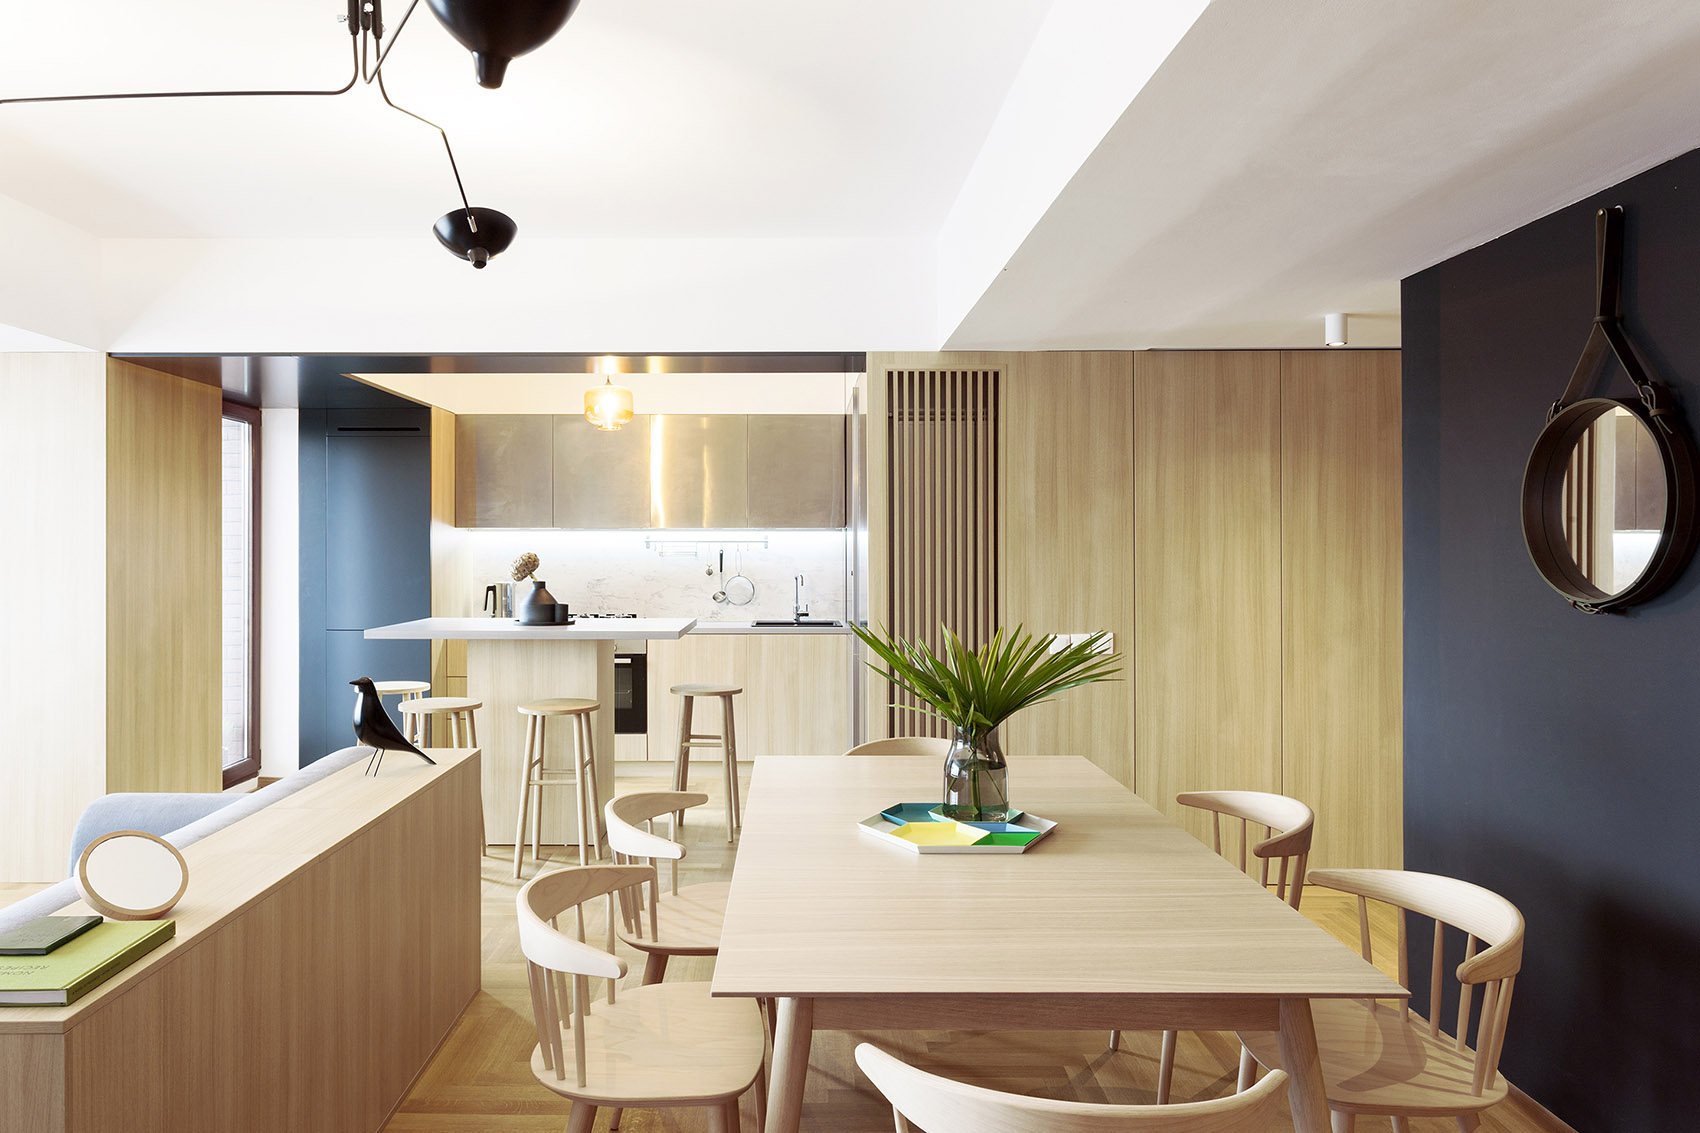 餐厅空间木质调背景，为空间映照出精致高雅的用餐格调，令空间显得更加轻盈通透。